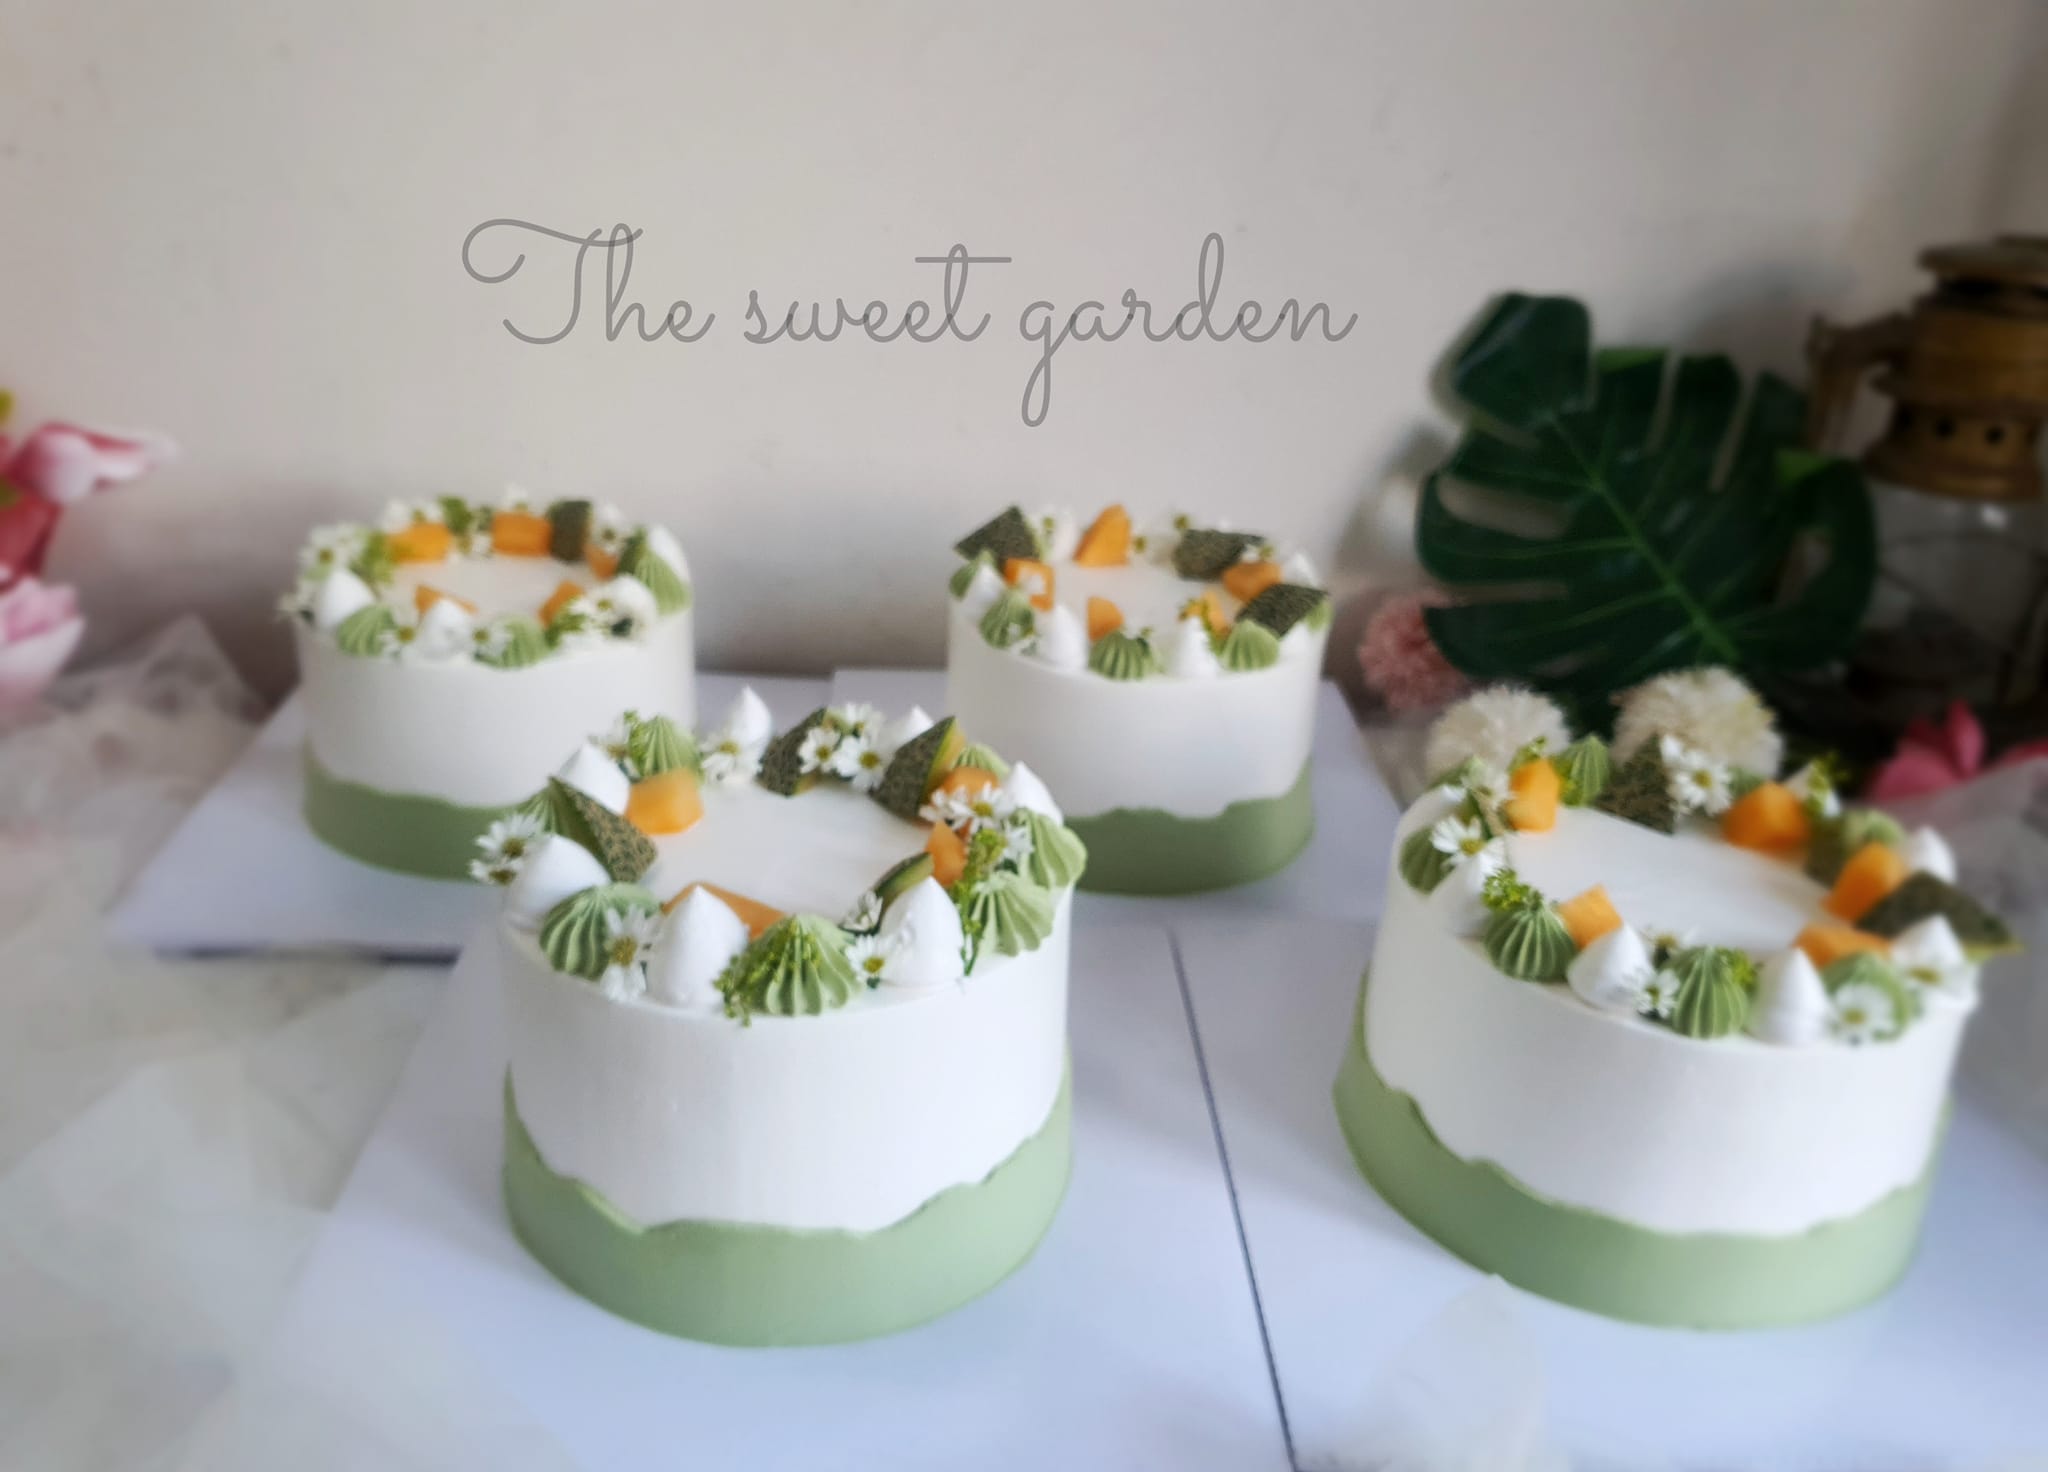 The sweet garden - Tiệm bánh kem Vũng Tàu ngon nức tiếng